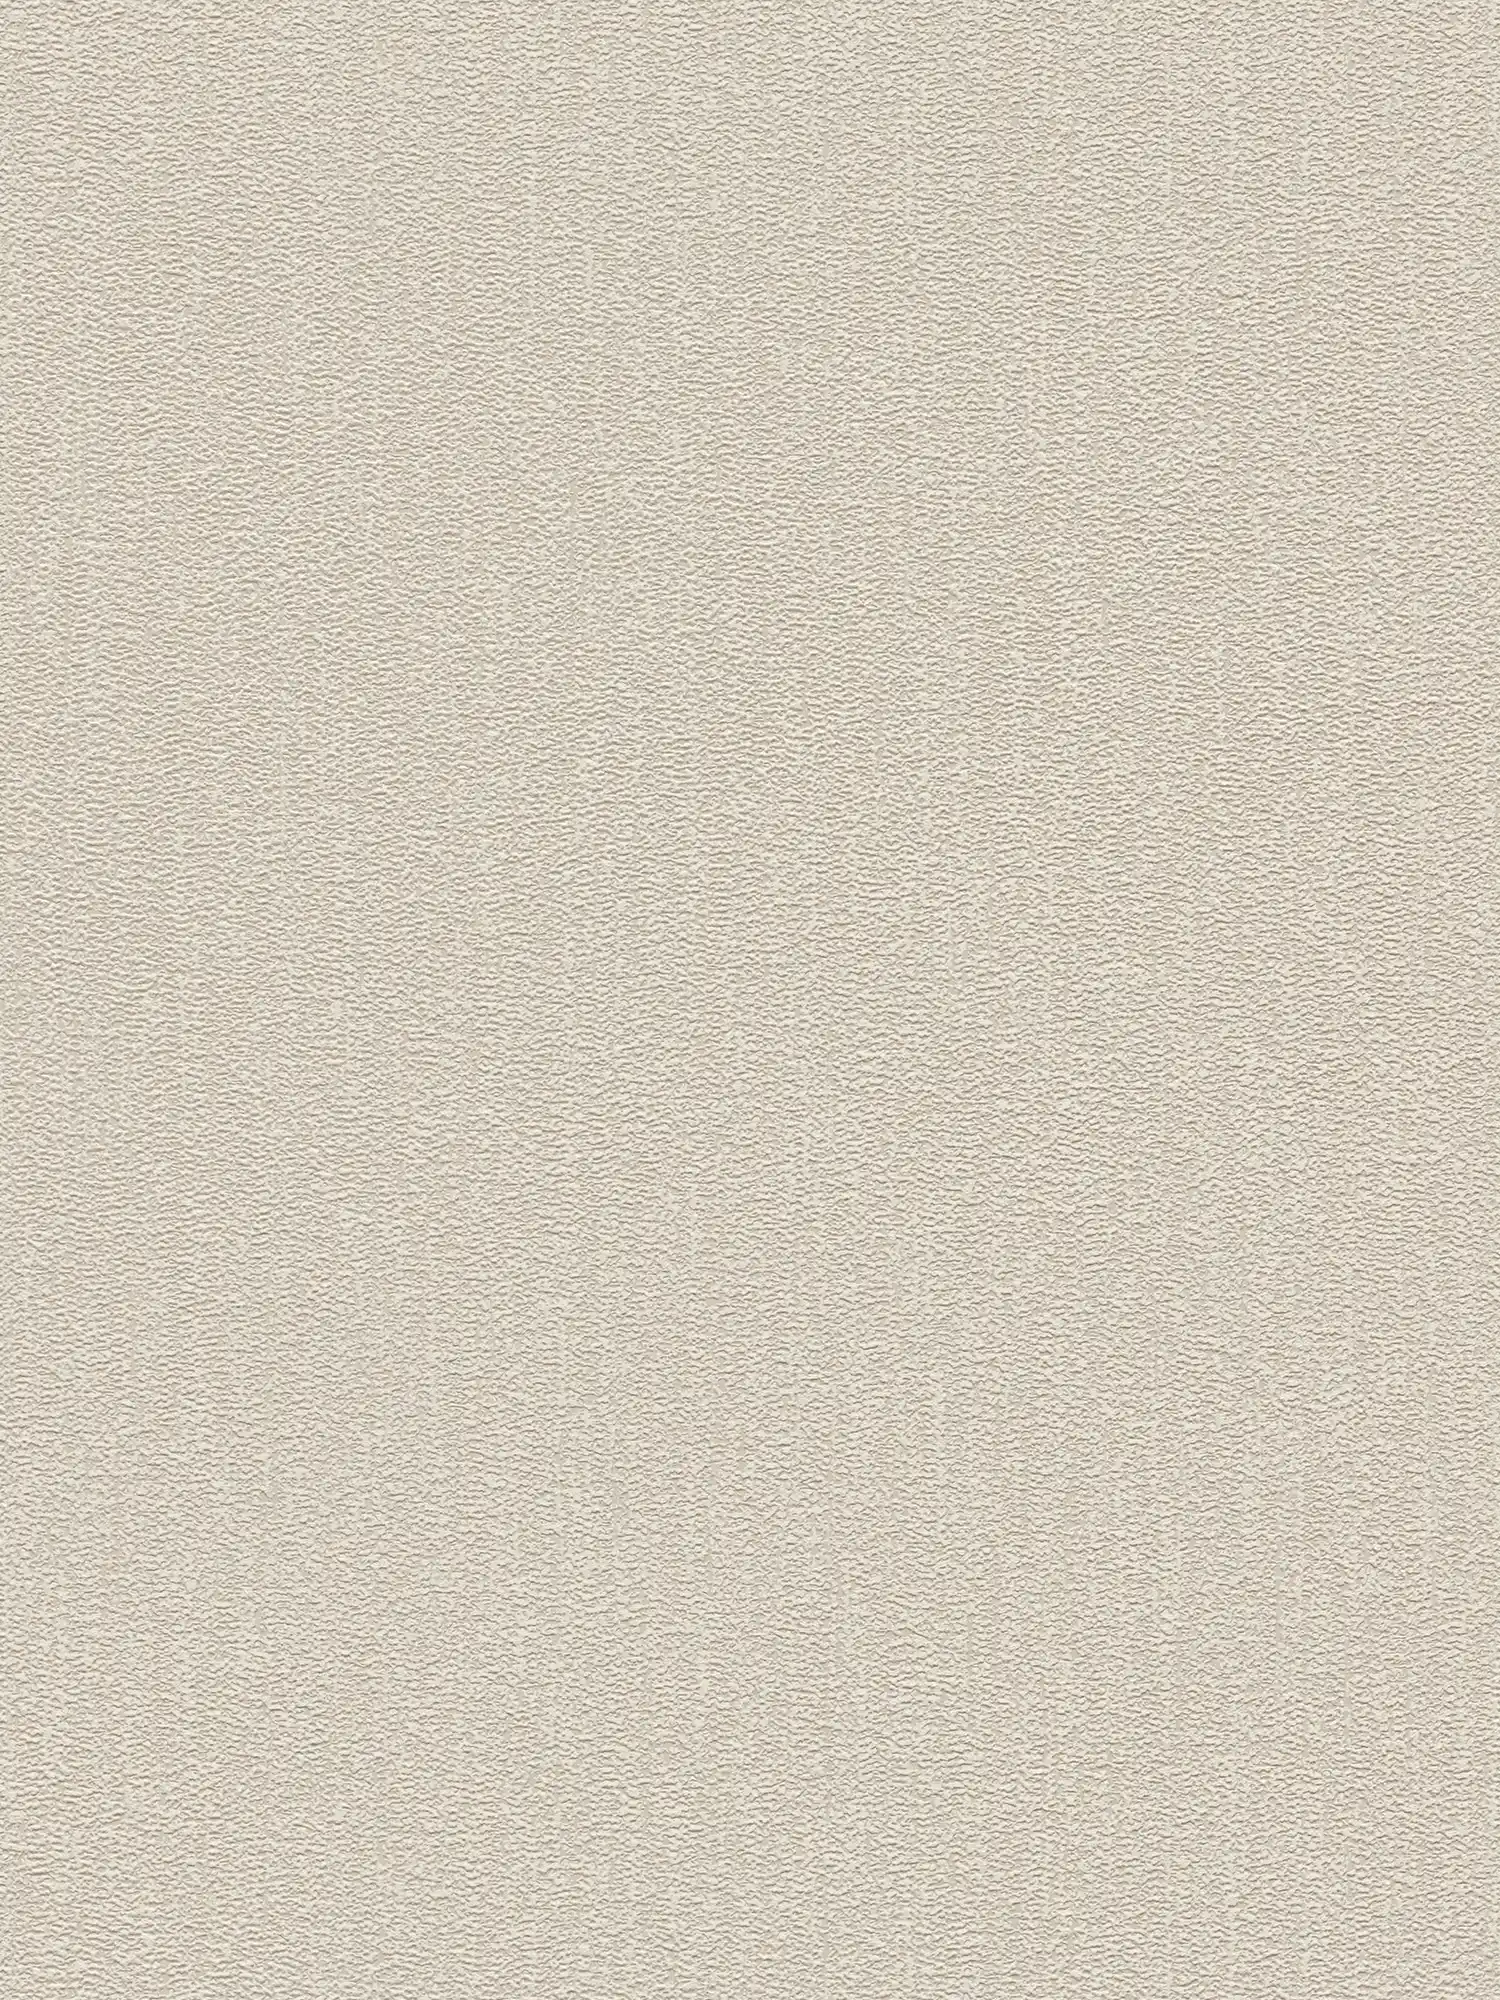 Papel pintado liso con estructura con un ligero brillo - beige, gris, plata
